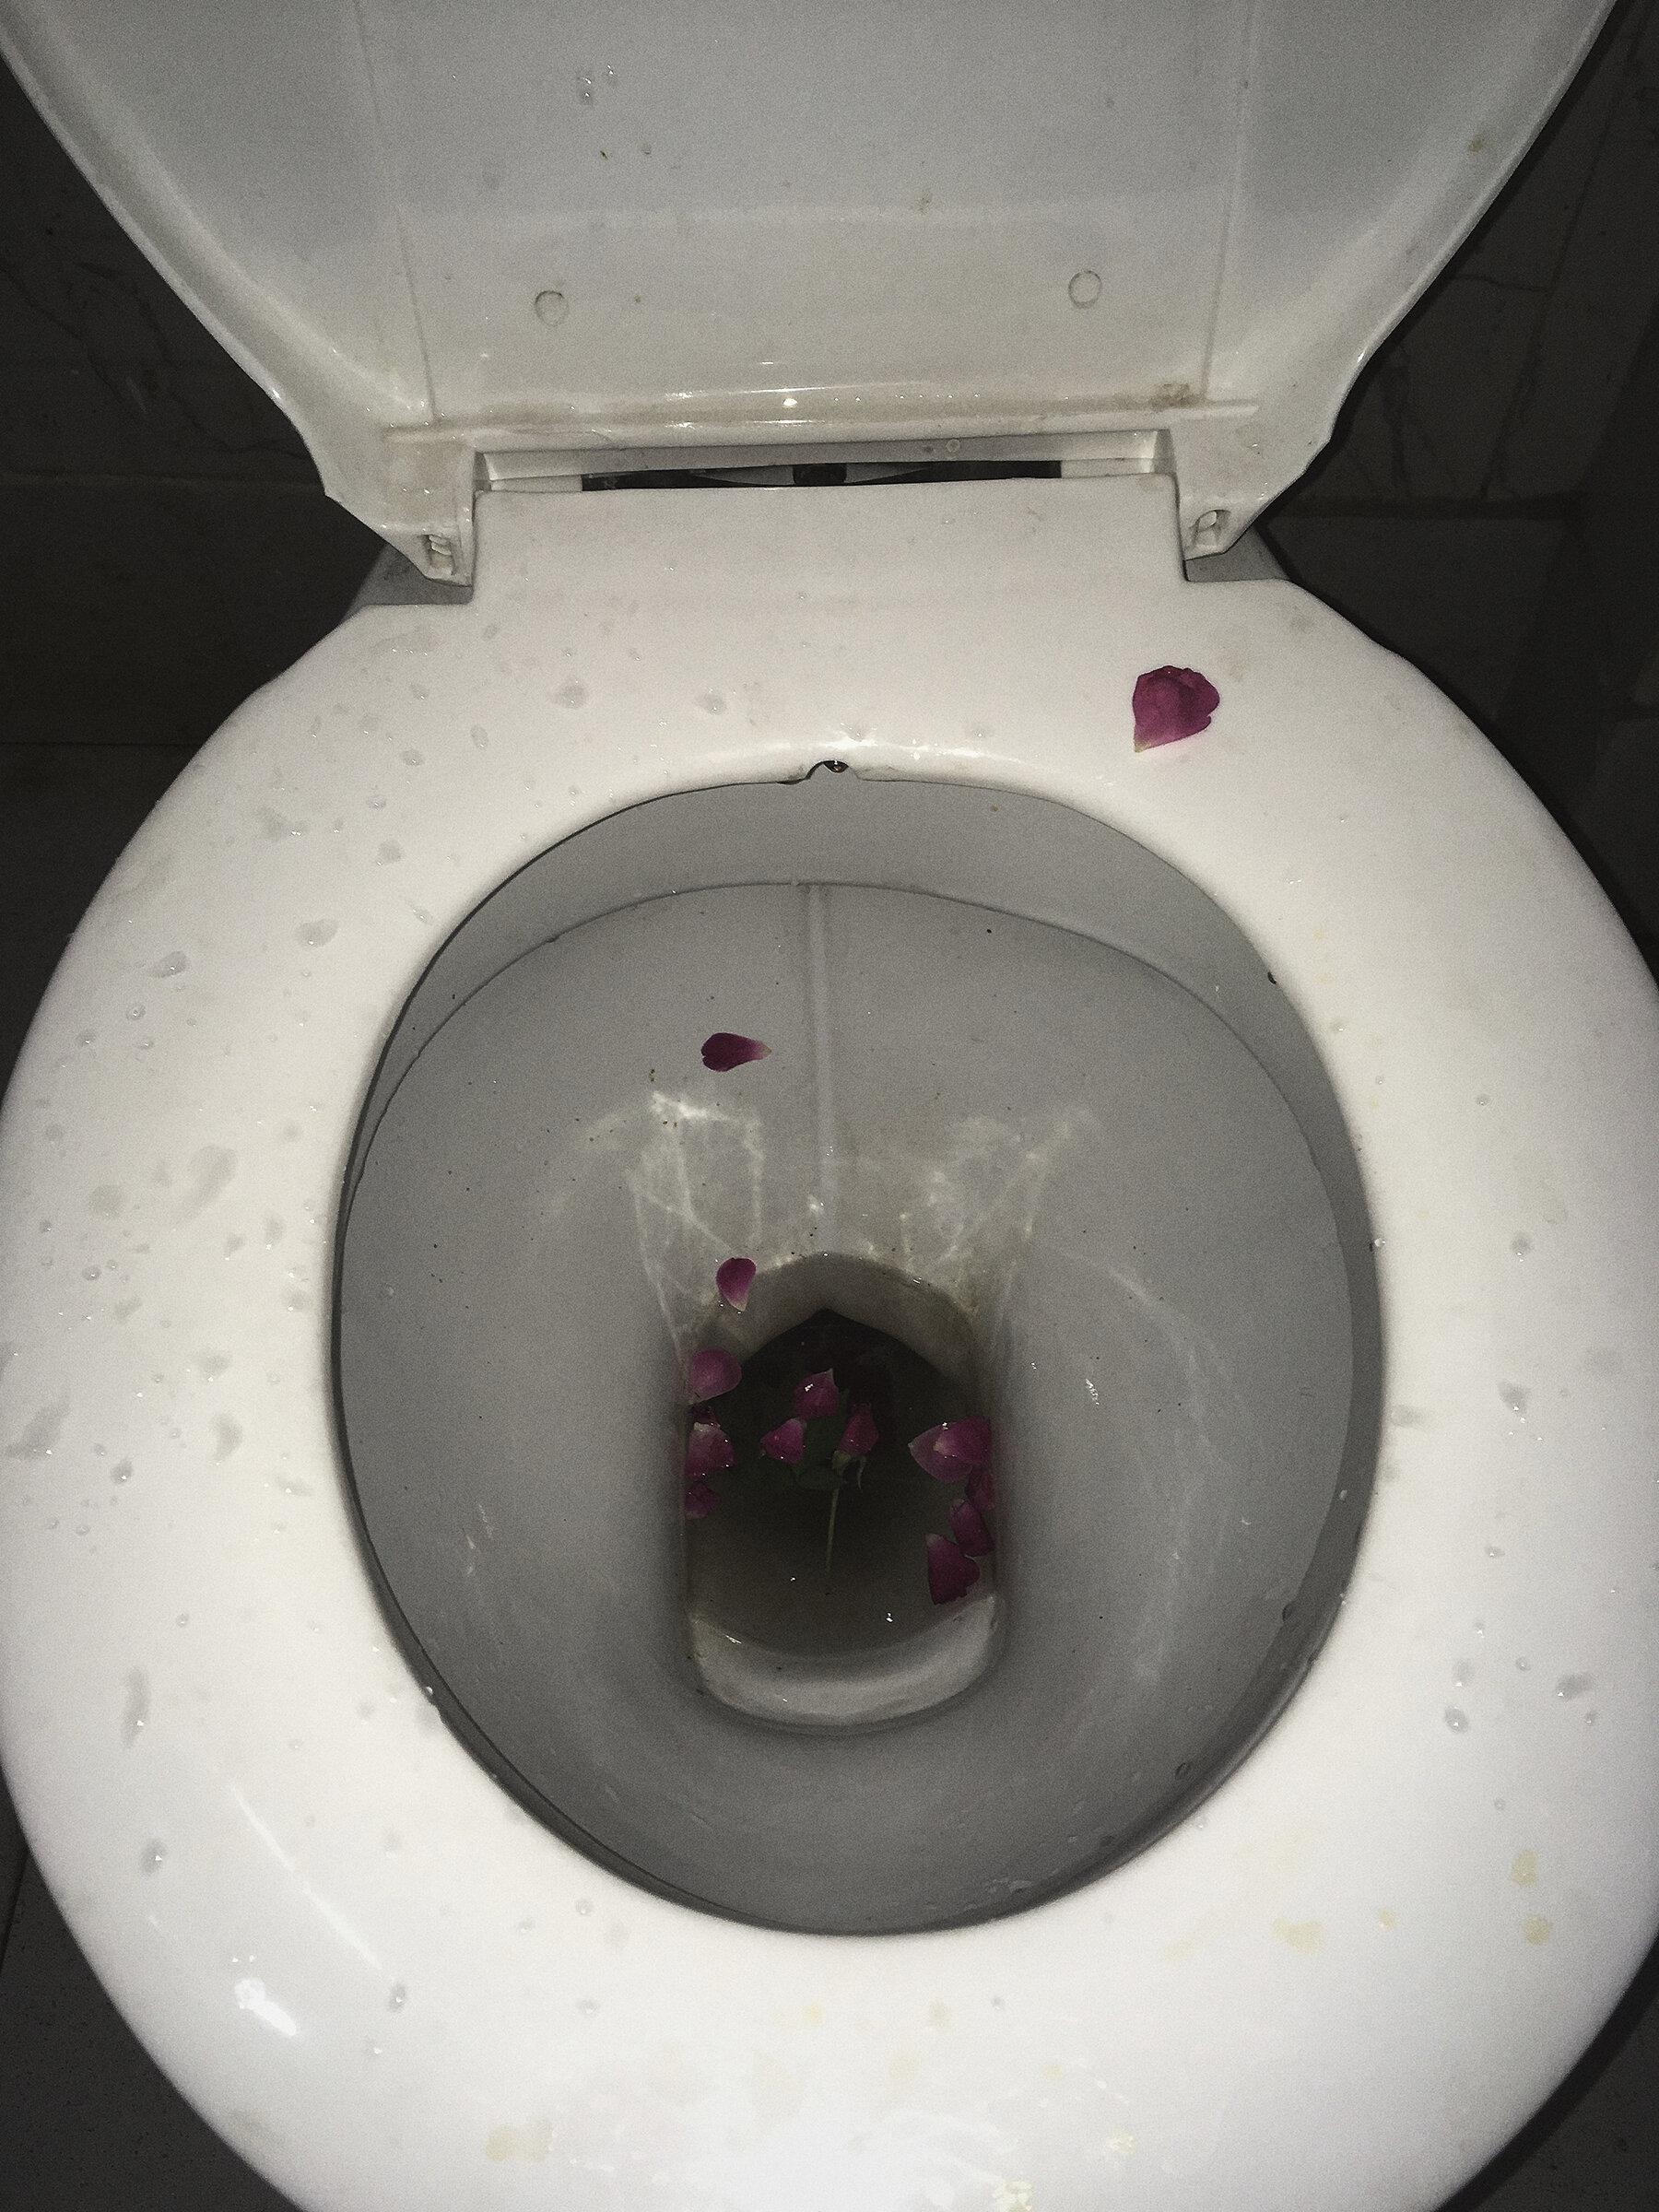 Bloody Vomit In Toilet